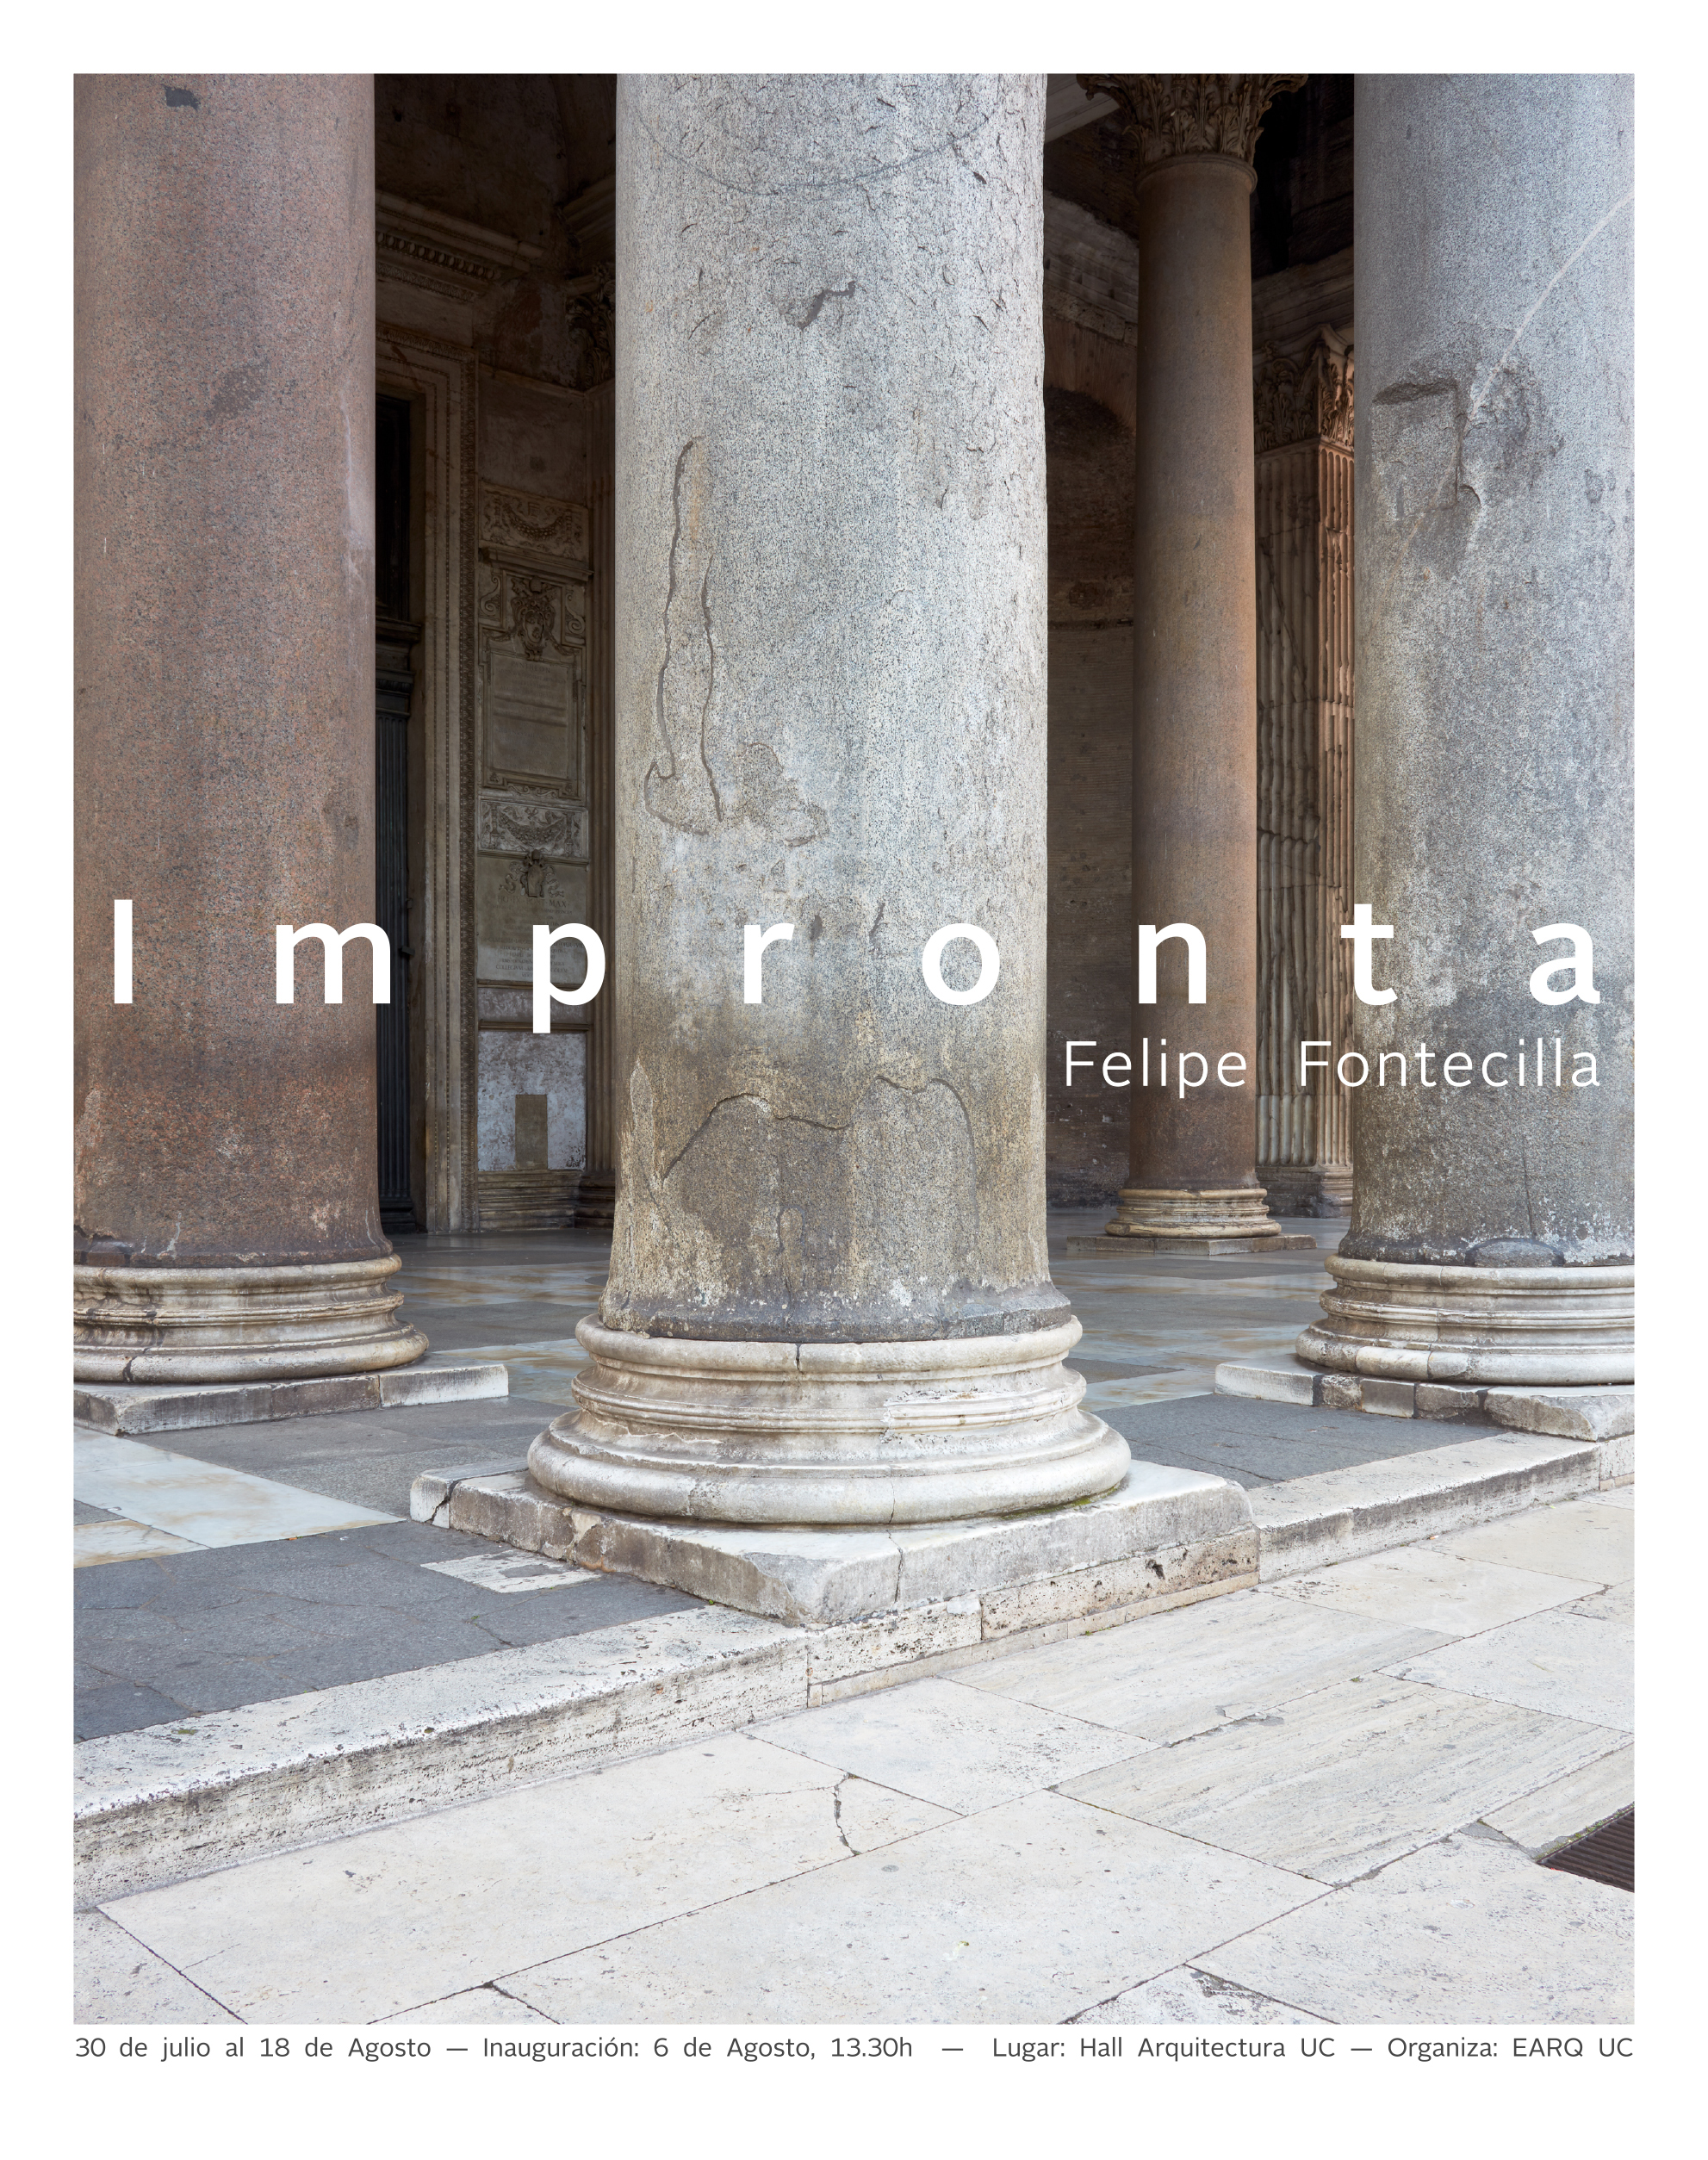 18-07-30_Felipe.Fontecilla_Impronta_Afiche.1_WEB_2.jpg